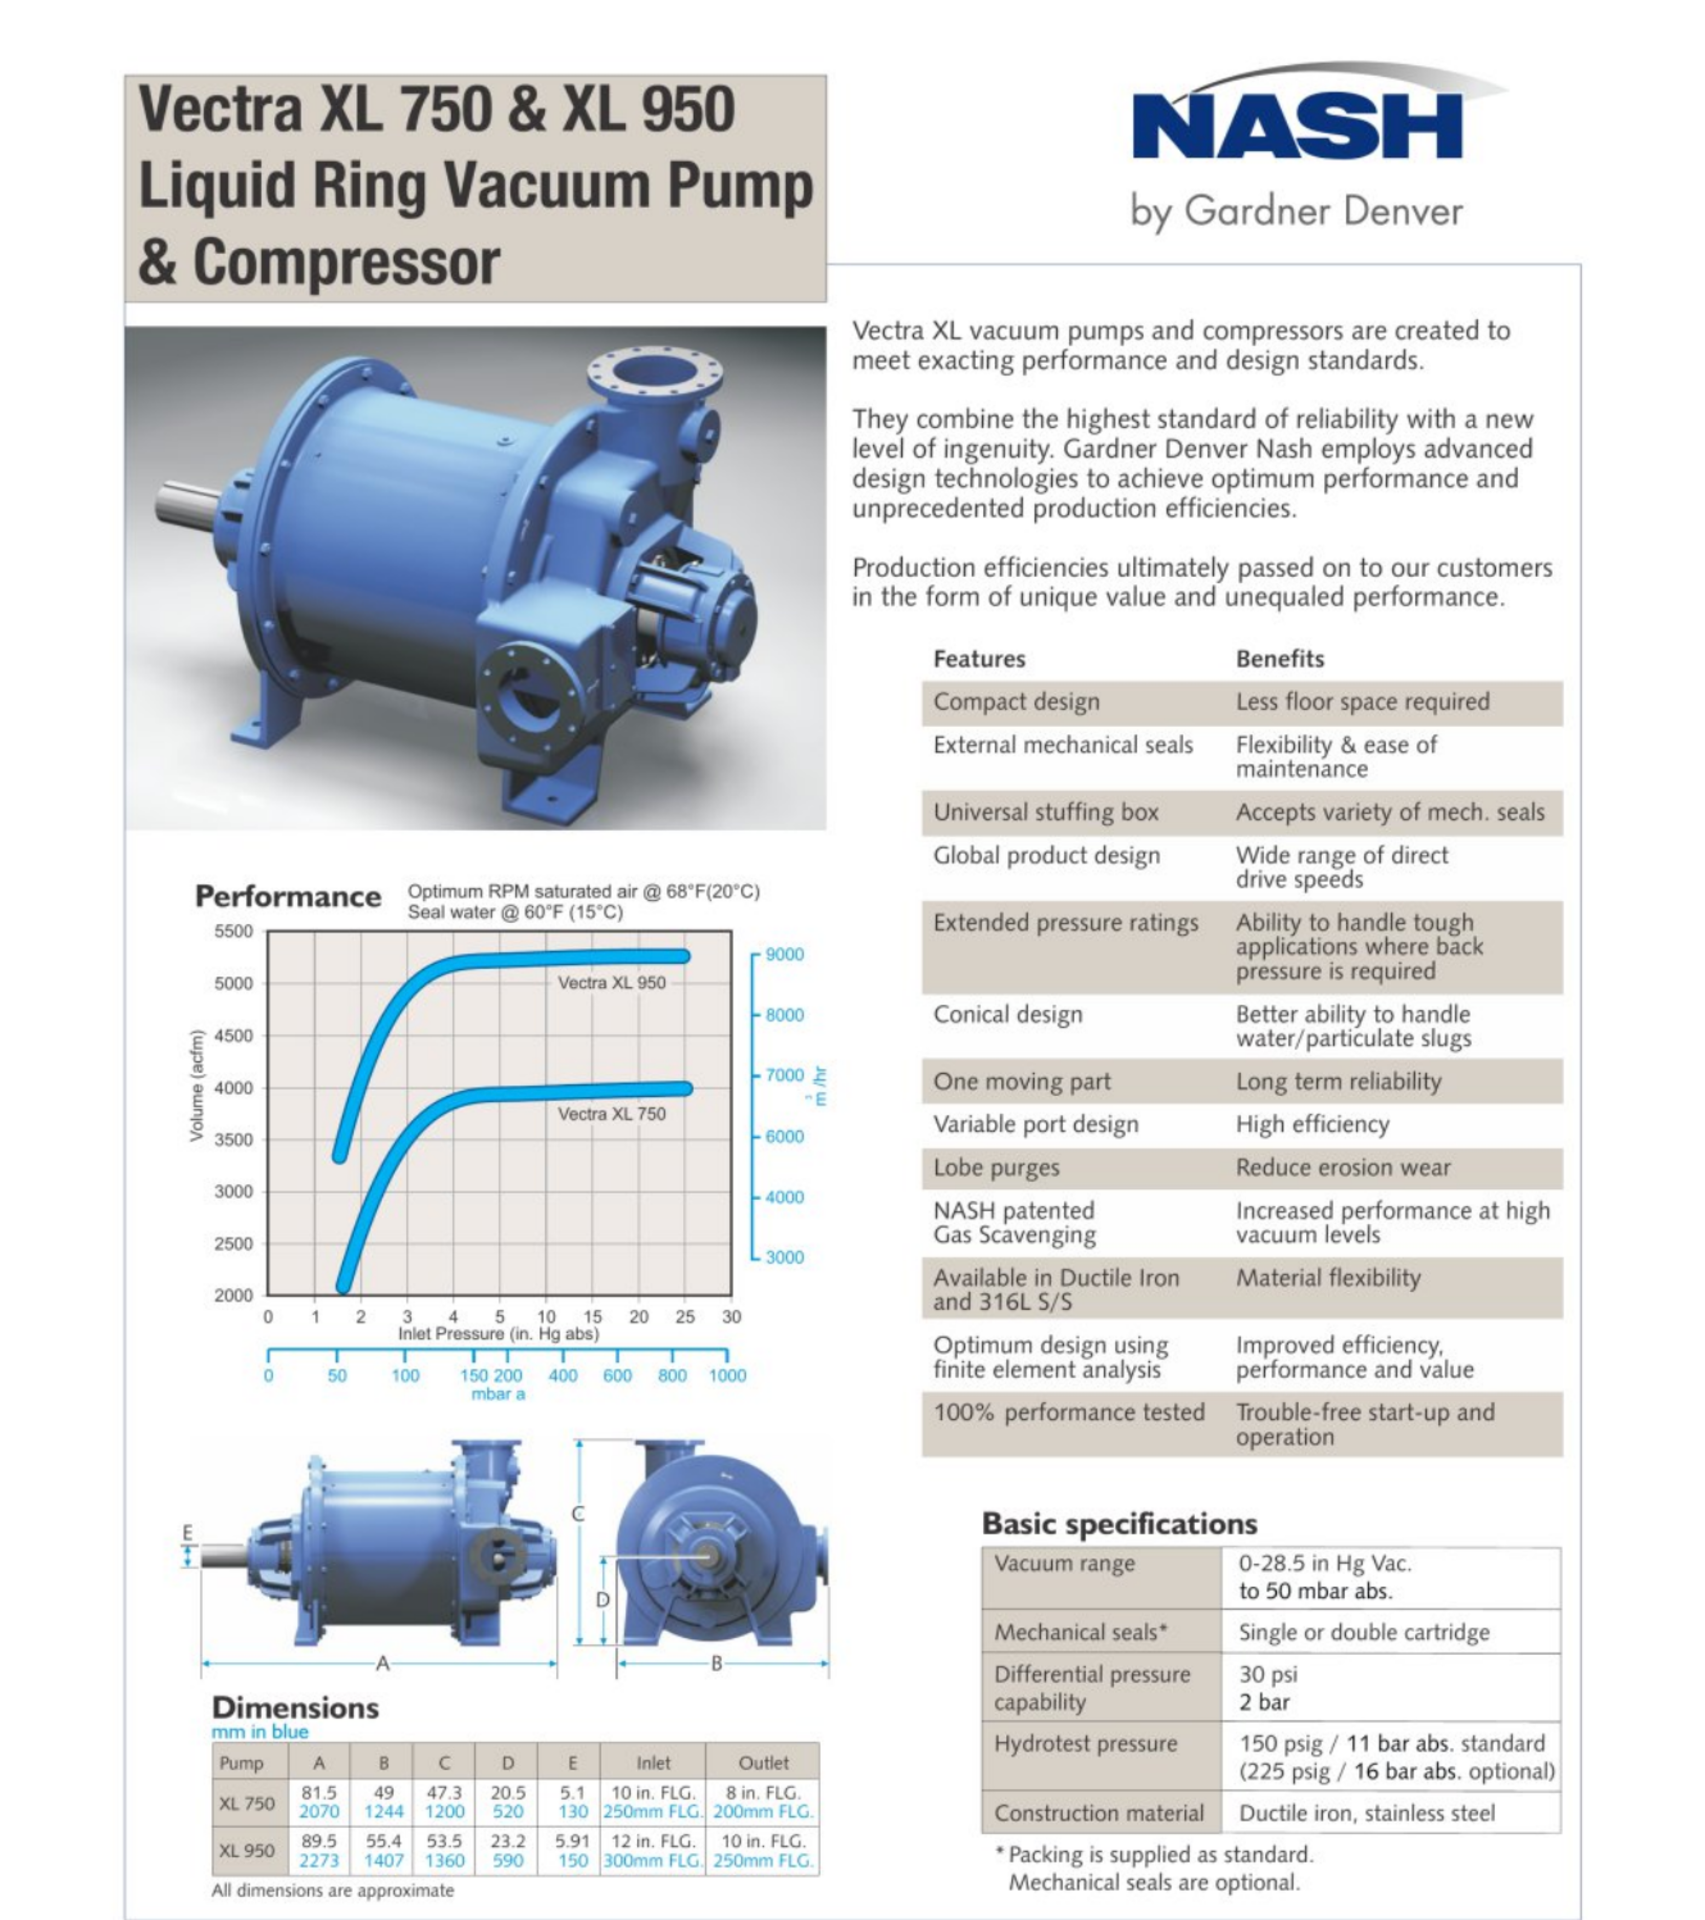 *NEW* 2019, NASH XL 950 Liquid Ring Vacuum Pump